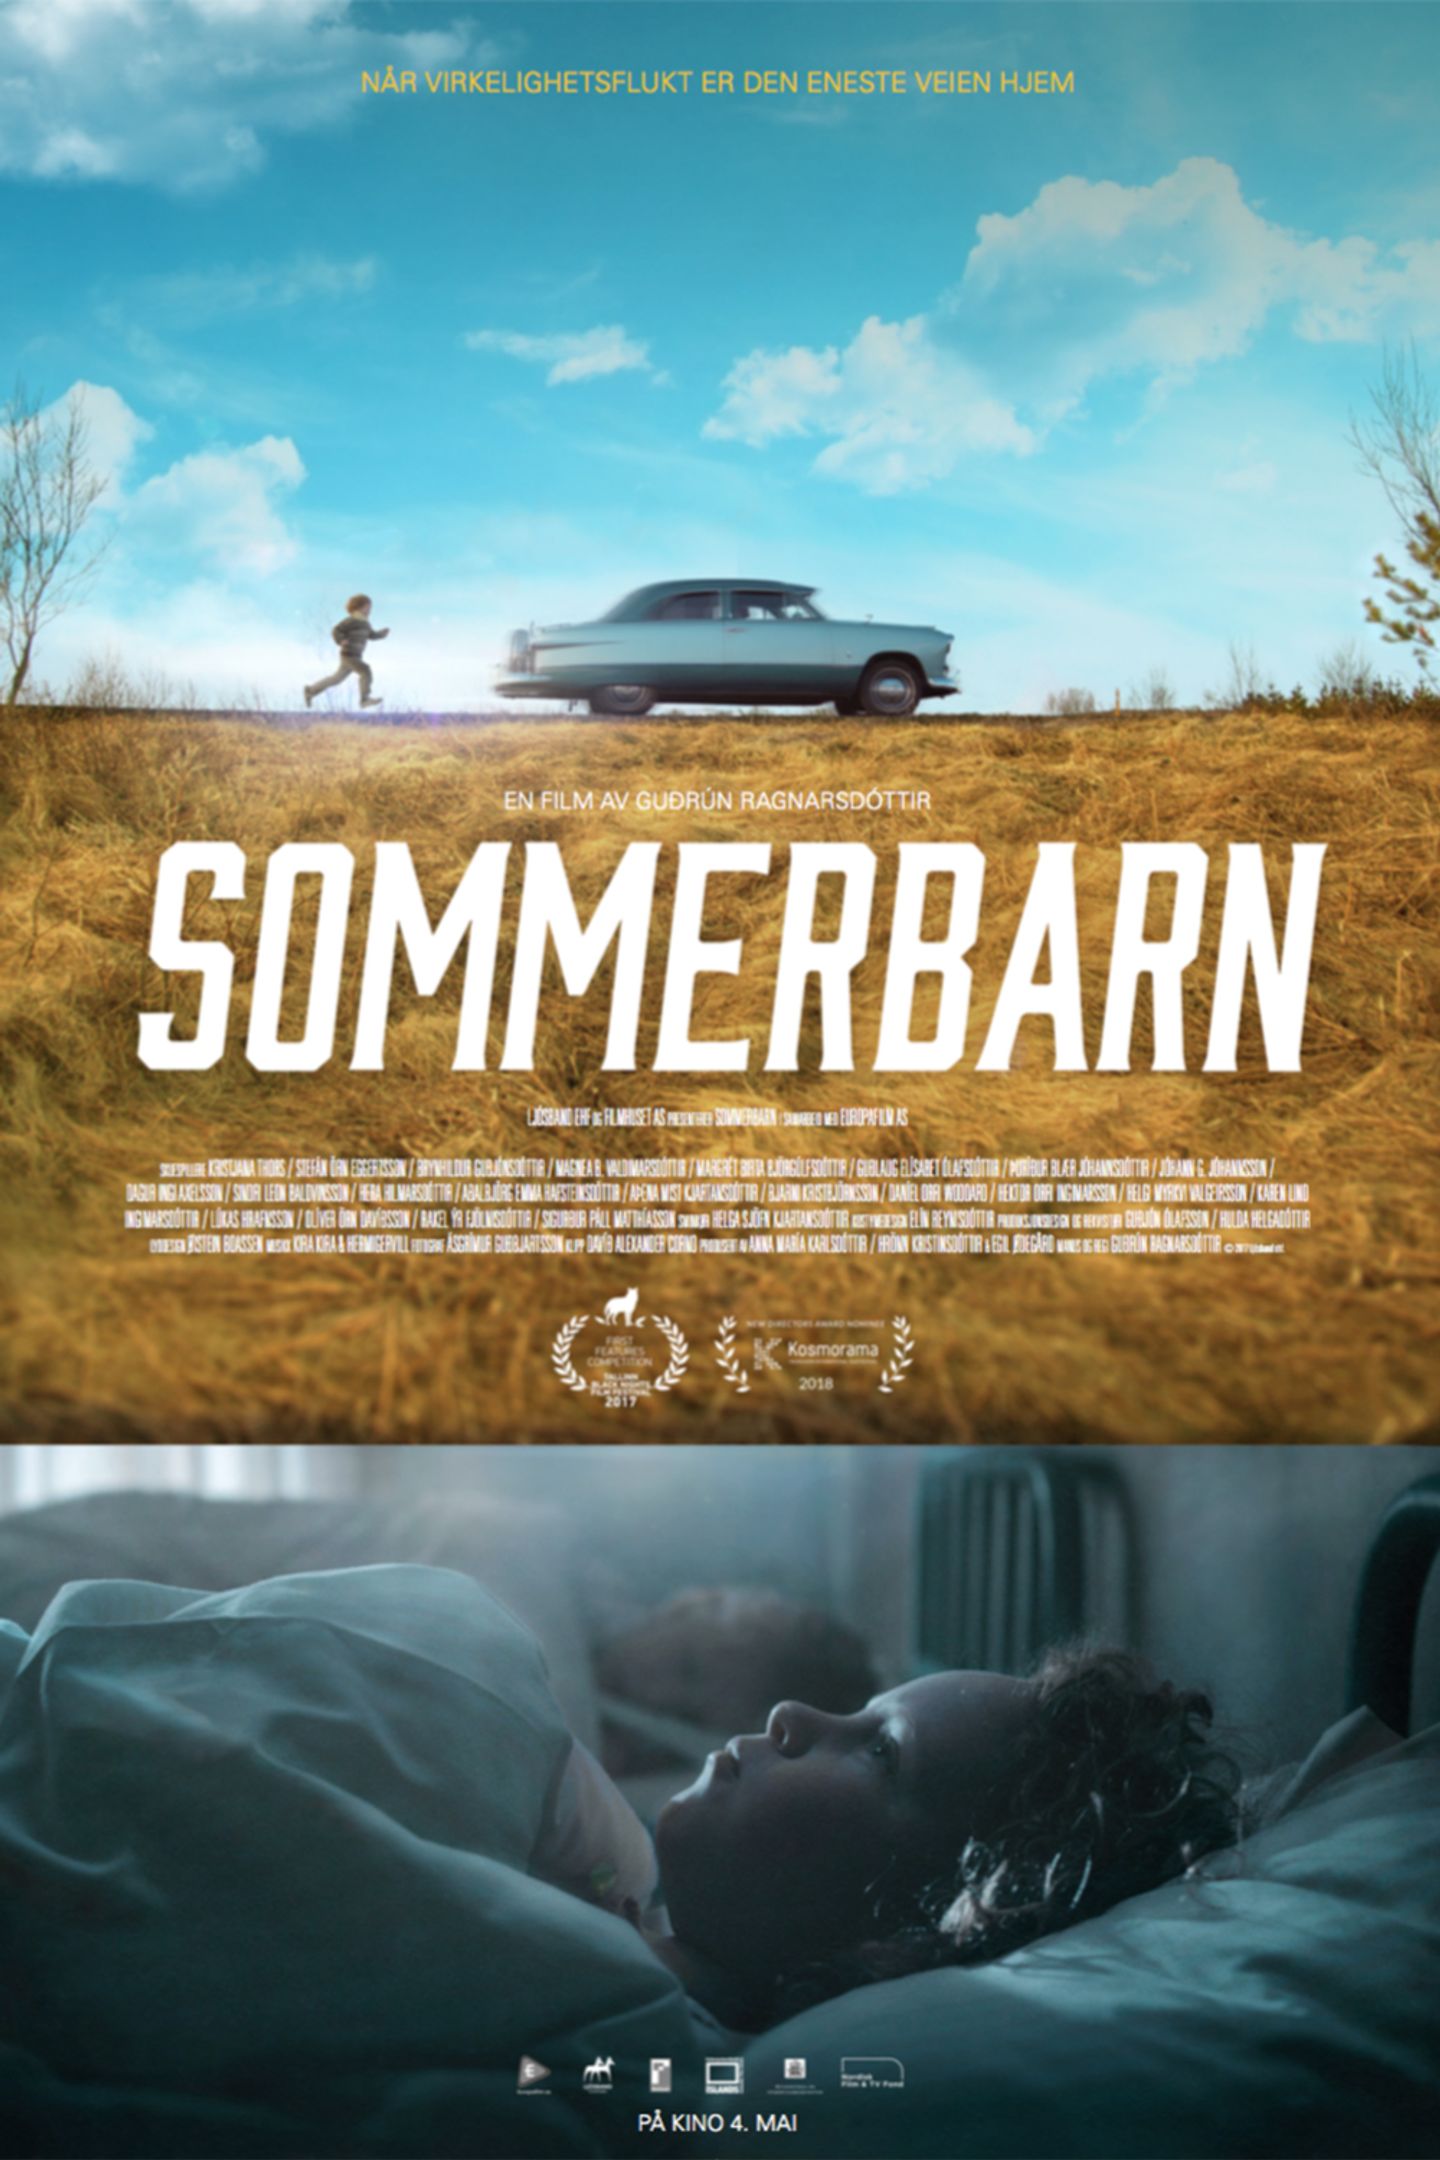 Plakat for 'Sommerbarn'